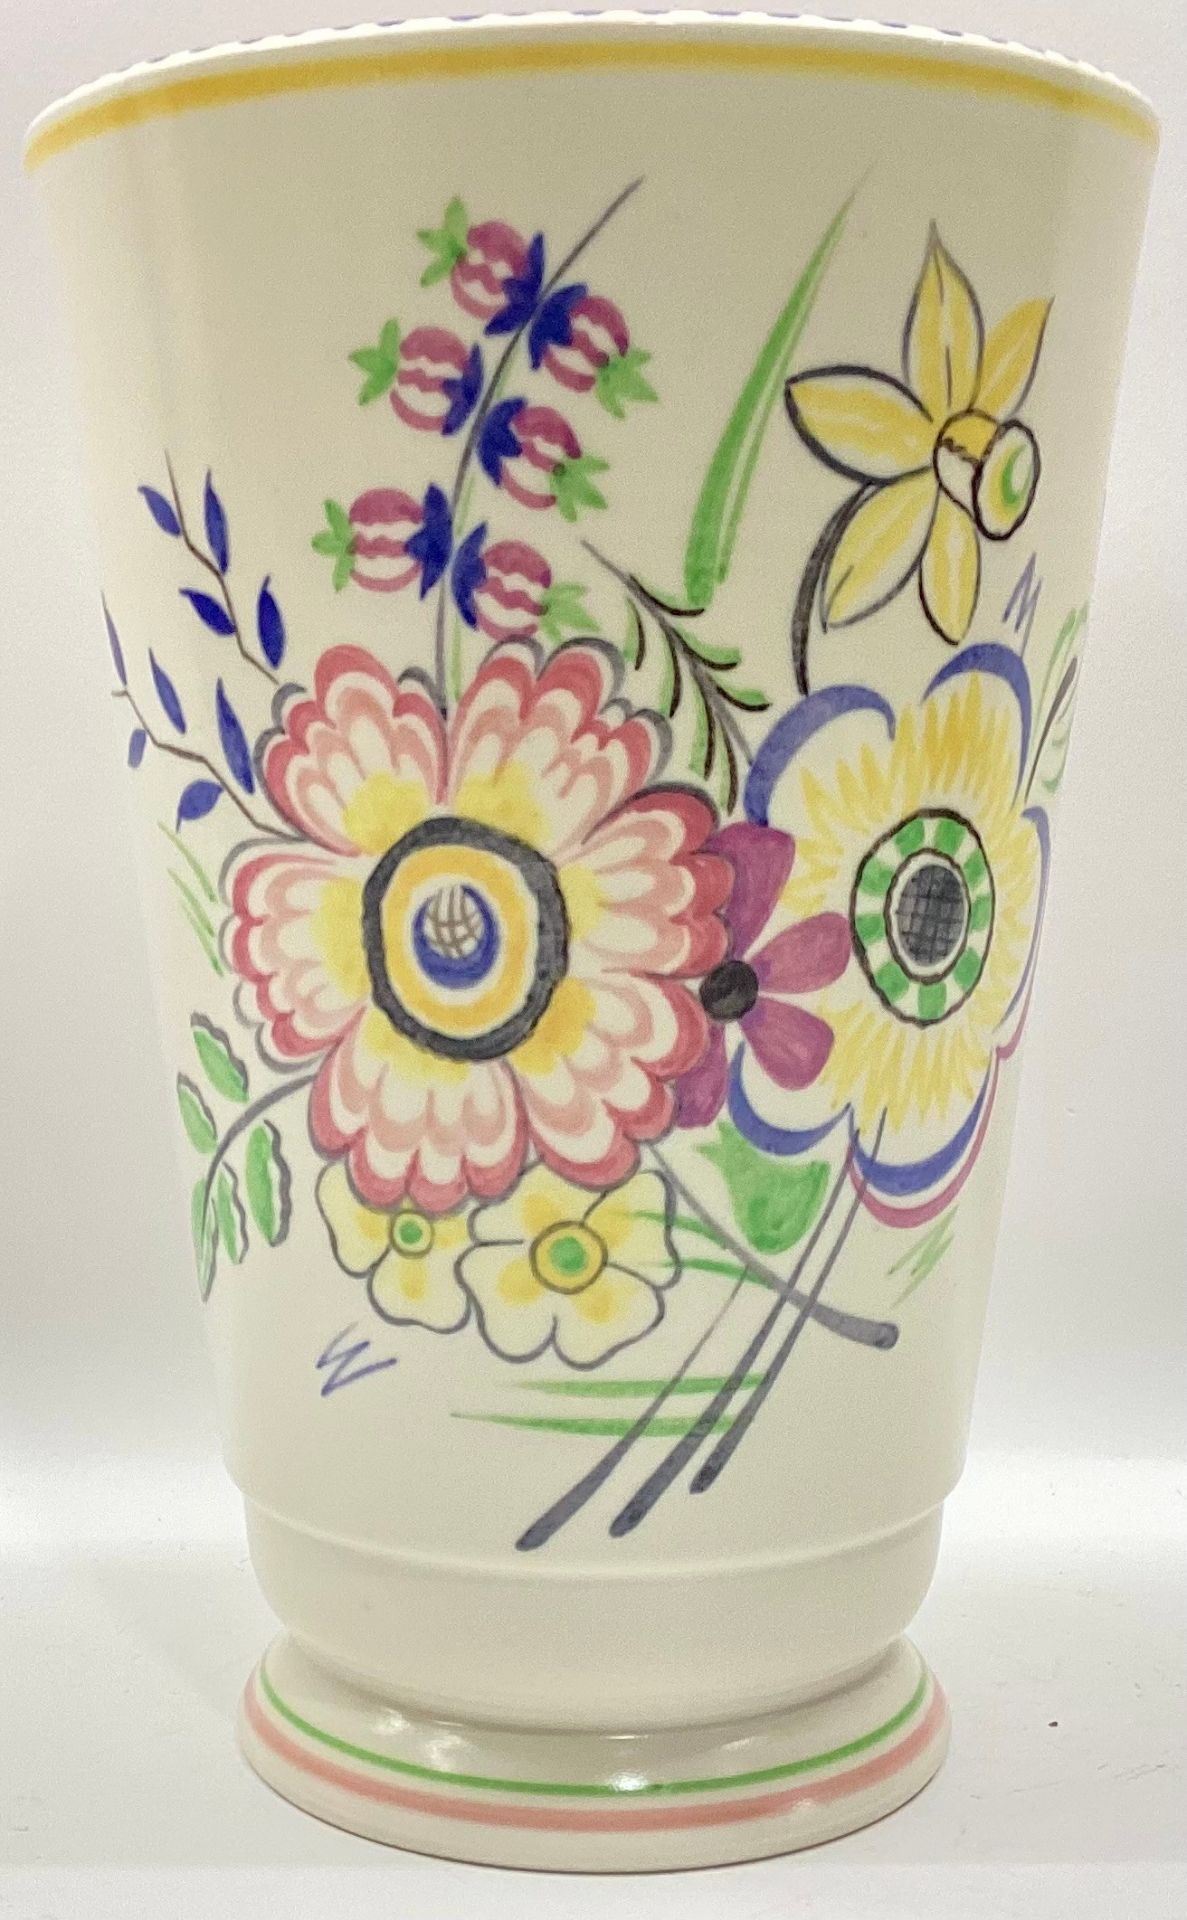 Poole Pottery shape 166 BD pattern vase 9.5" high.